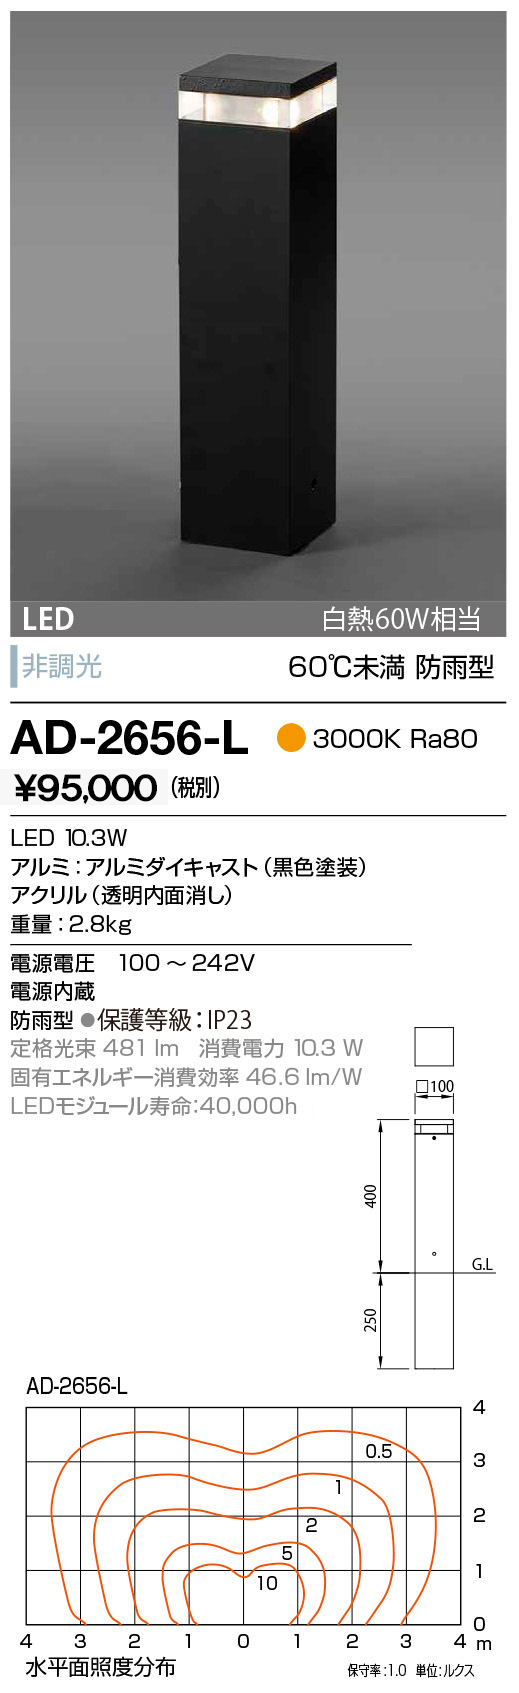 AD-2656-L